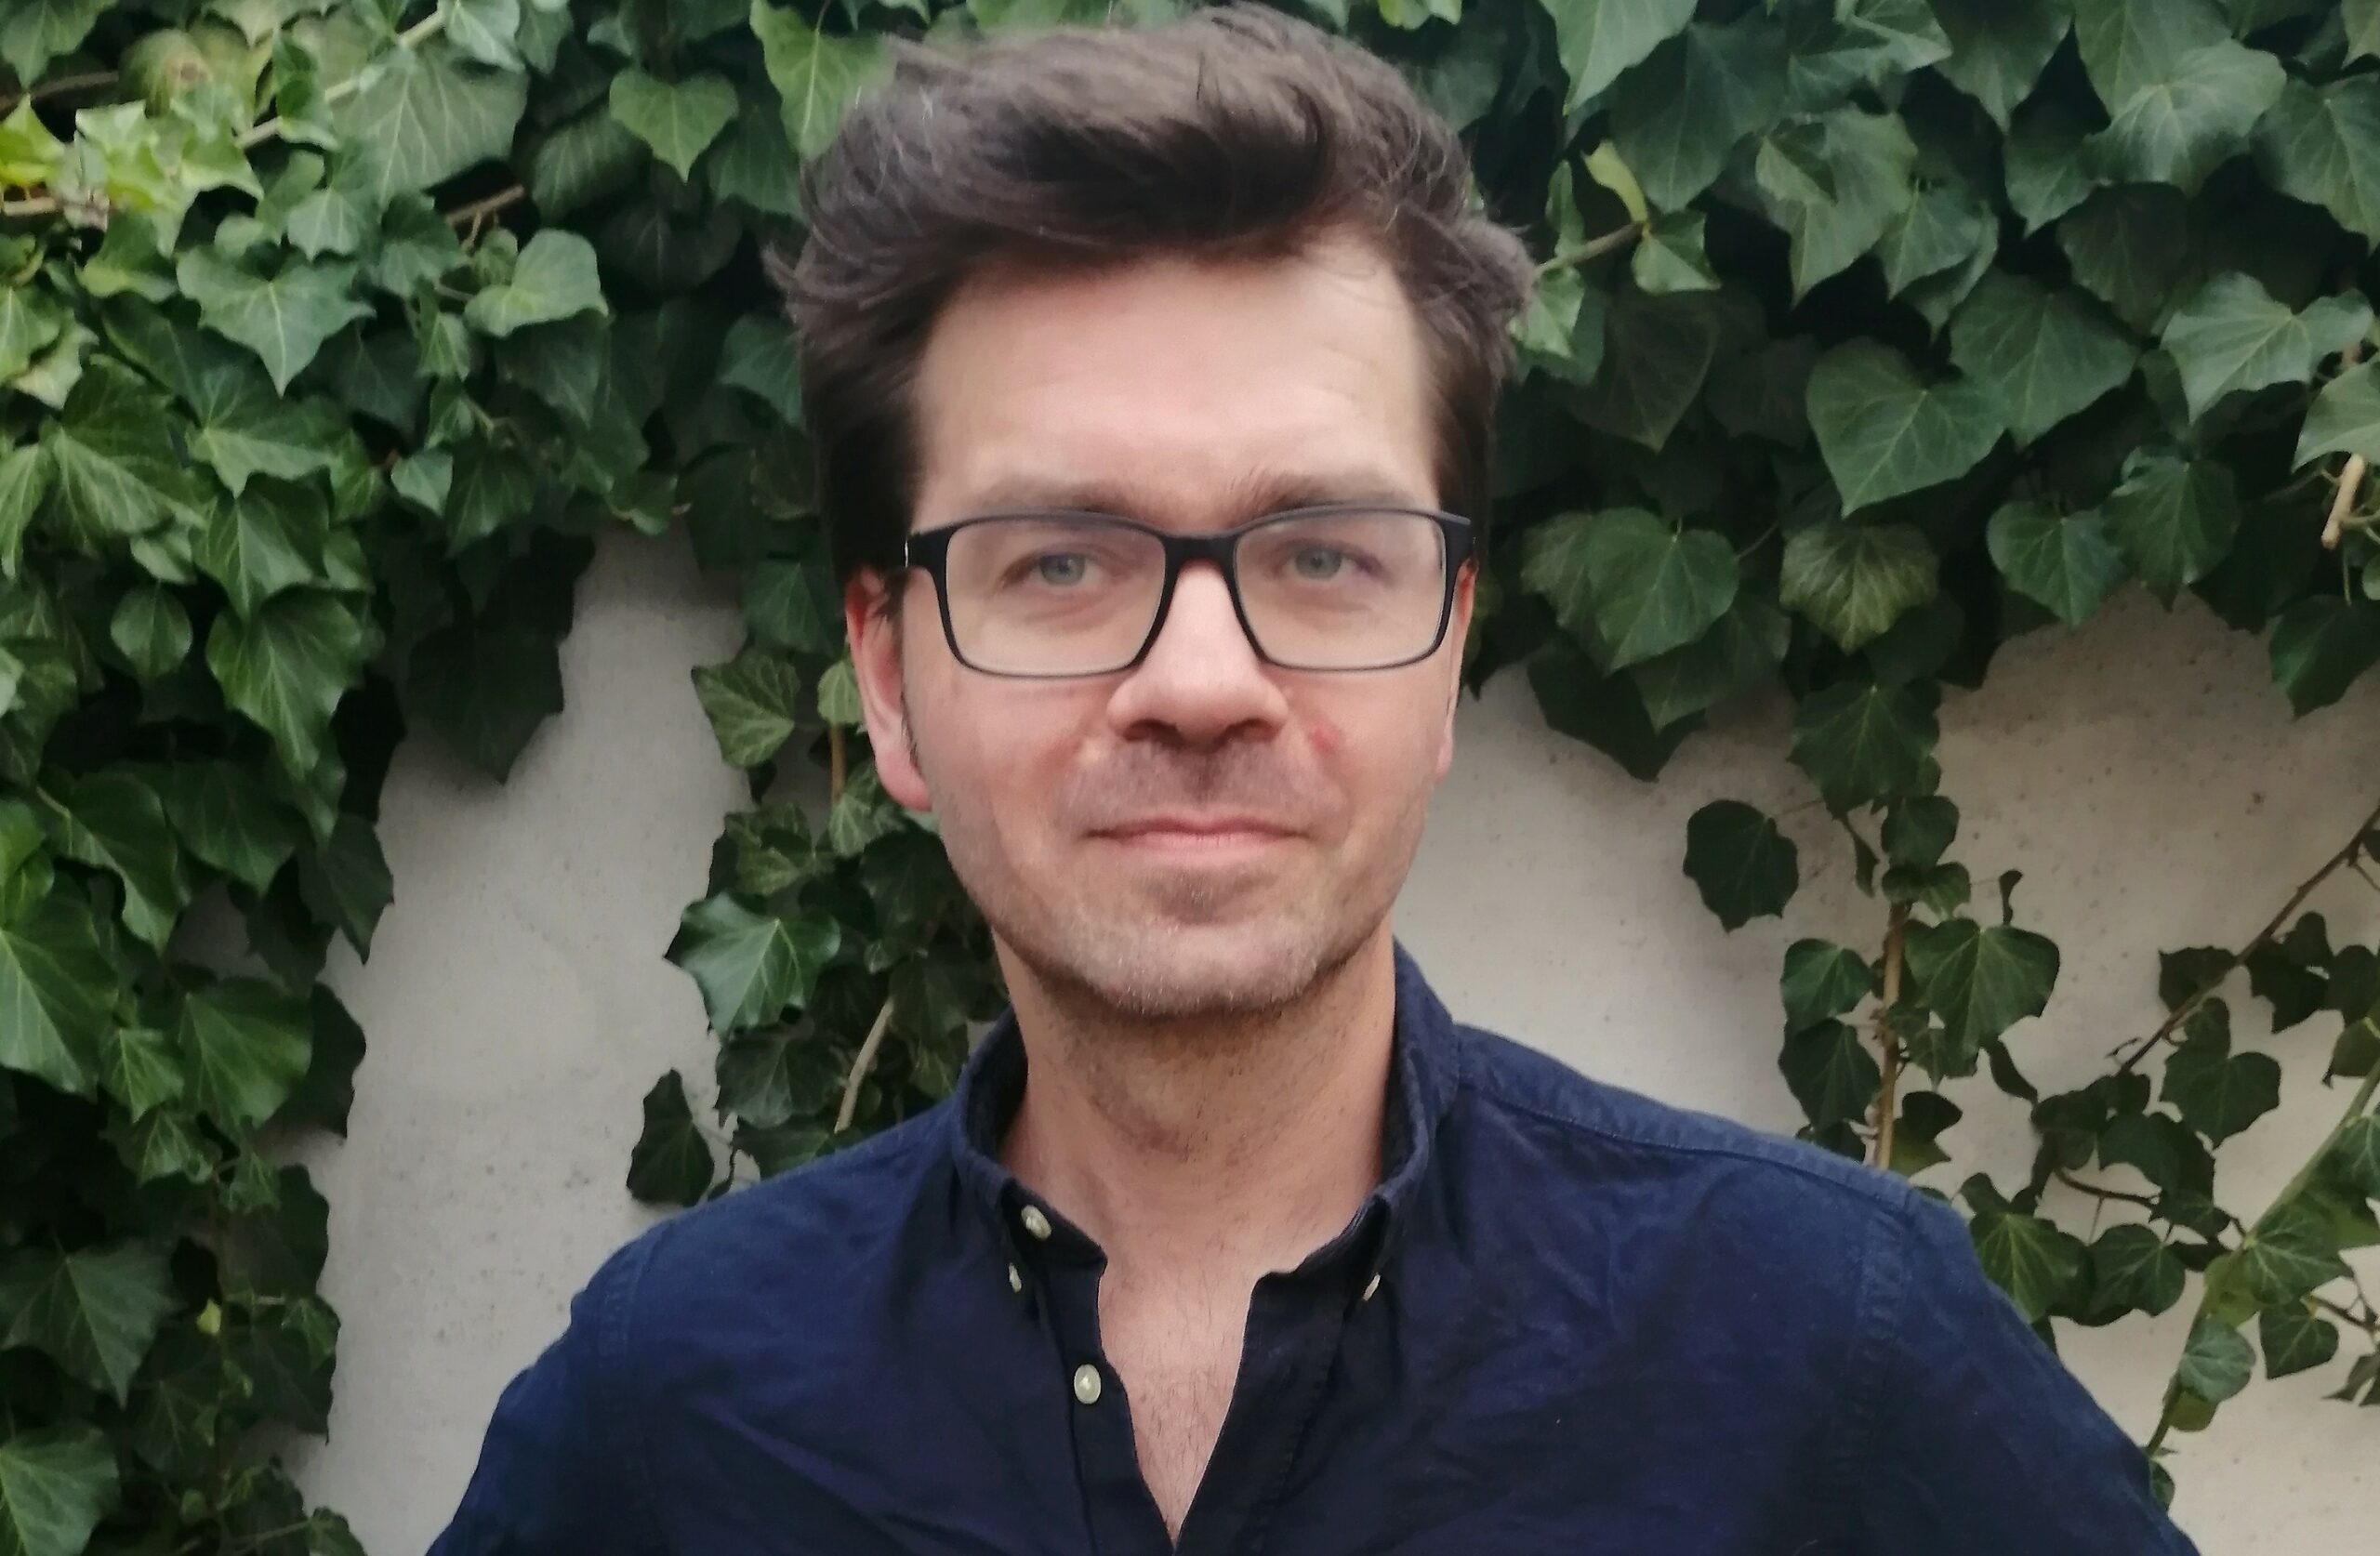 Das Foto zeigt Sebastian Göschel. Er hat dunkelbraunes Haar, trägt eine Brille mit schwarzem Gestell und ein dunkelblaues Hemd. Im Hintergrund eine mit Efeu bewachsene Wand.